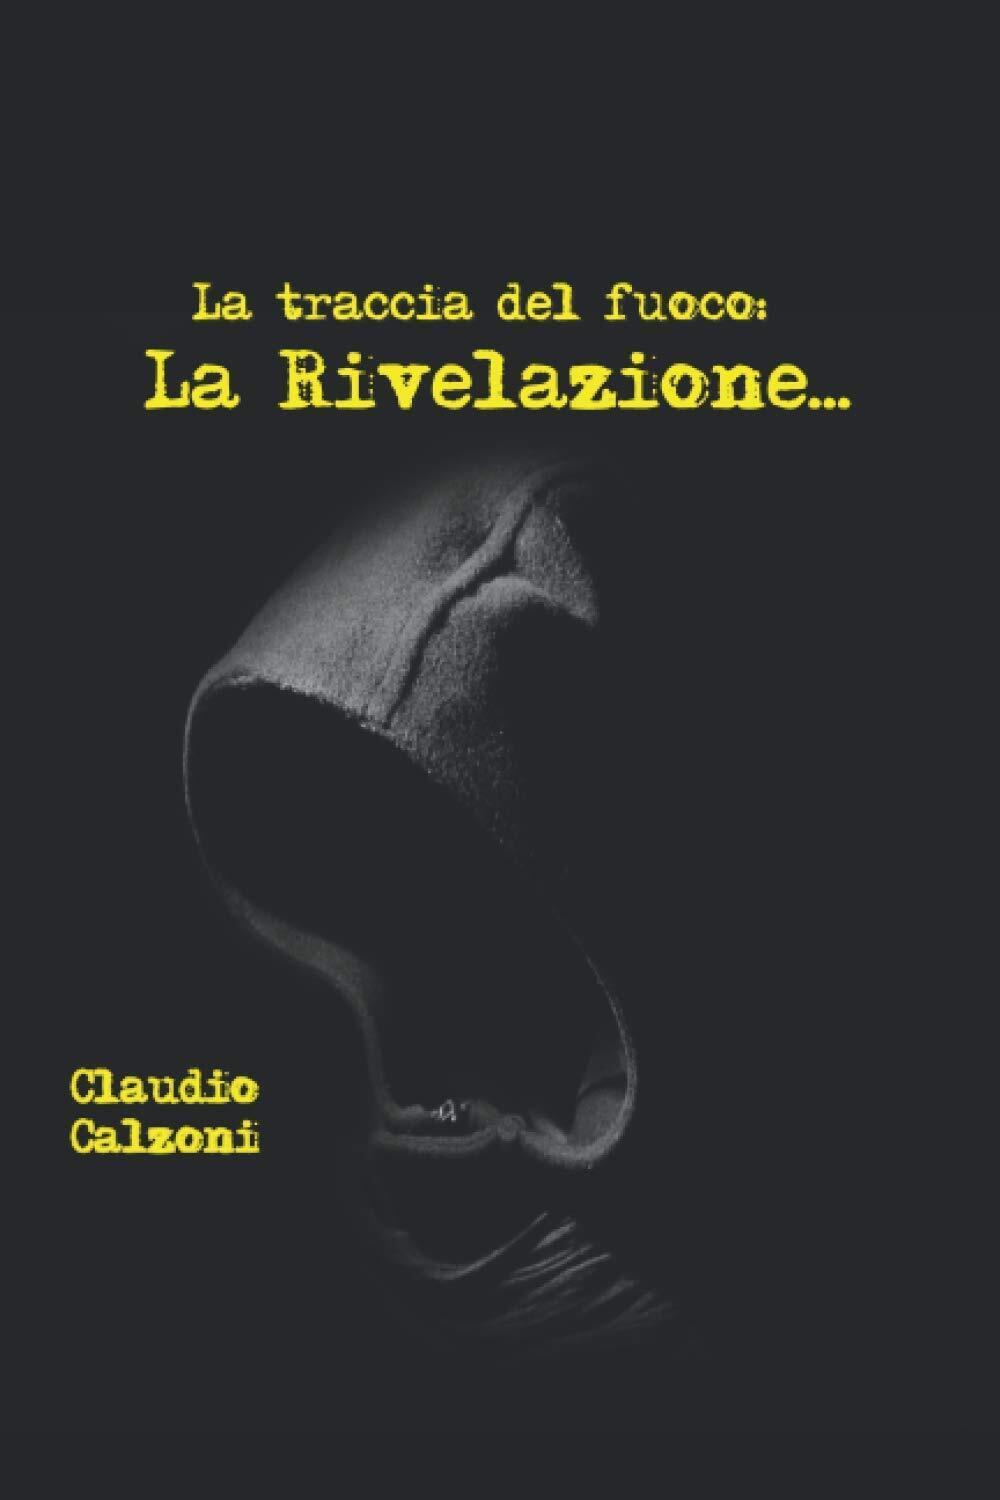 La traccia del fuoco: La rivelazione - Claudio Calzoni - ?Independently, 2020